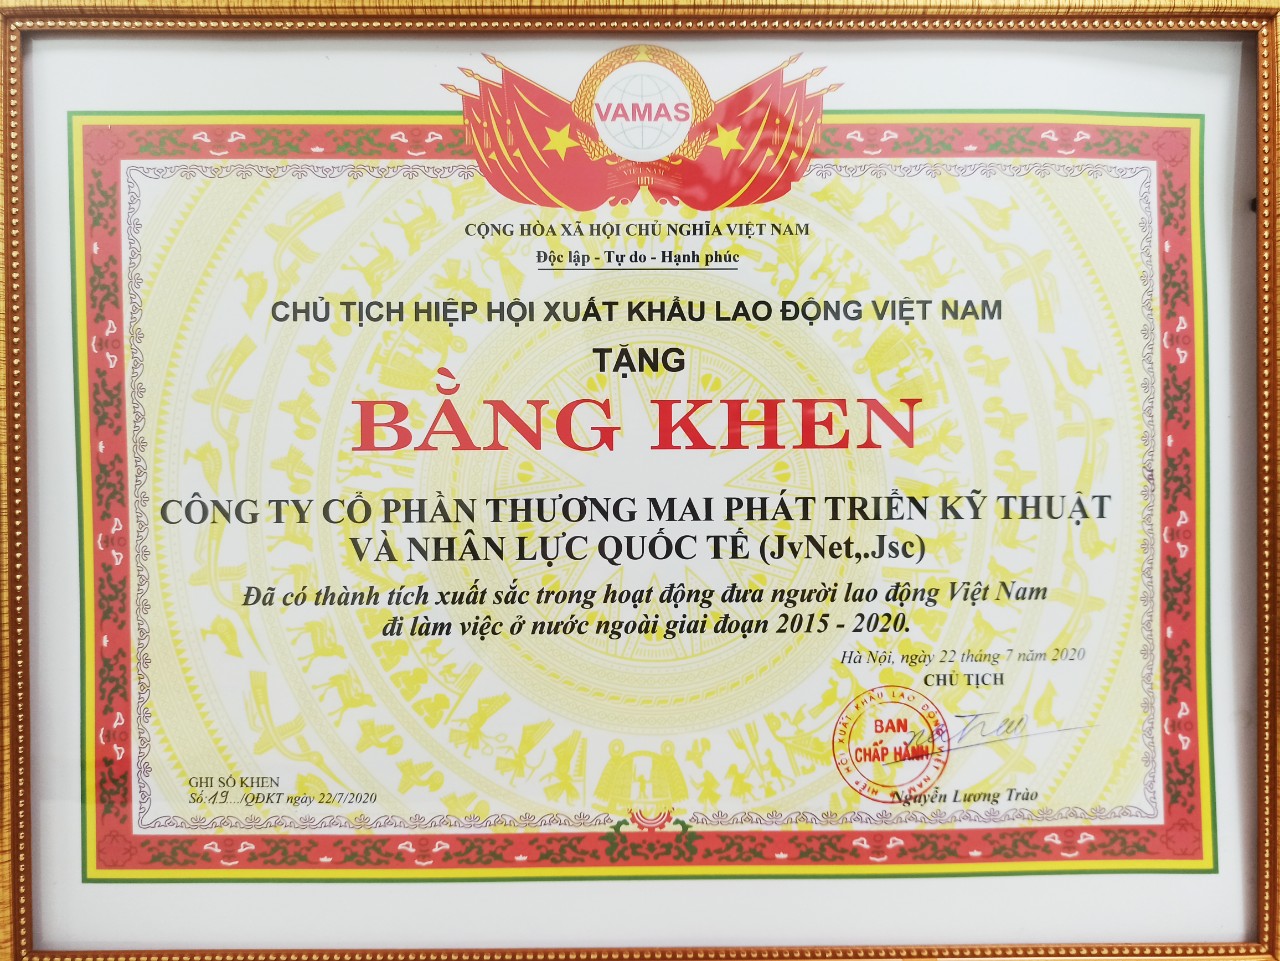 hiệp hội xuất khẩu lao động Việt Nam